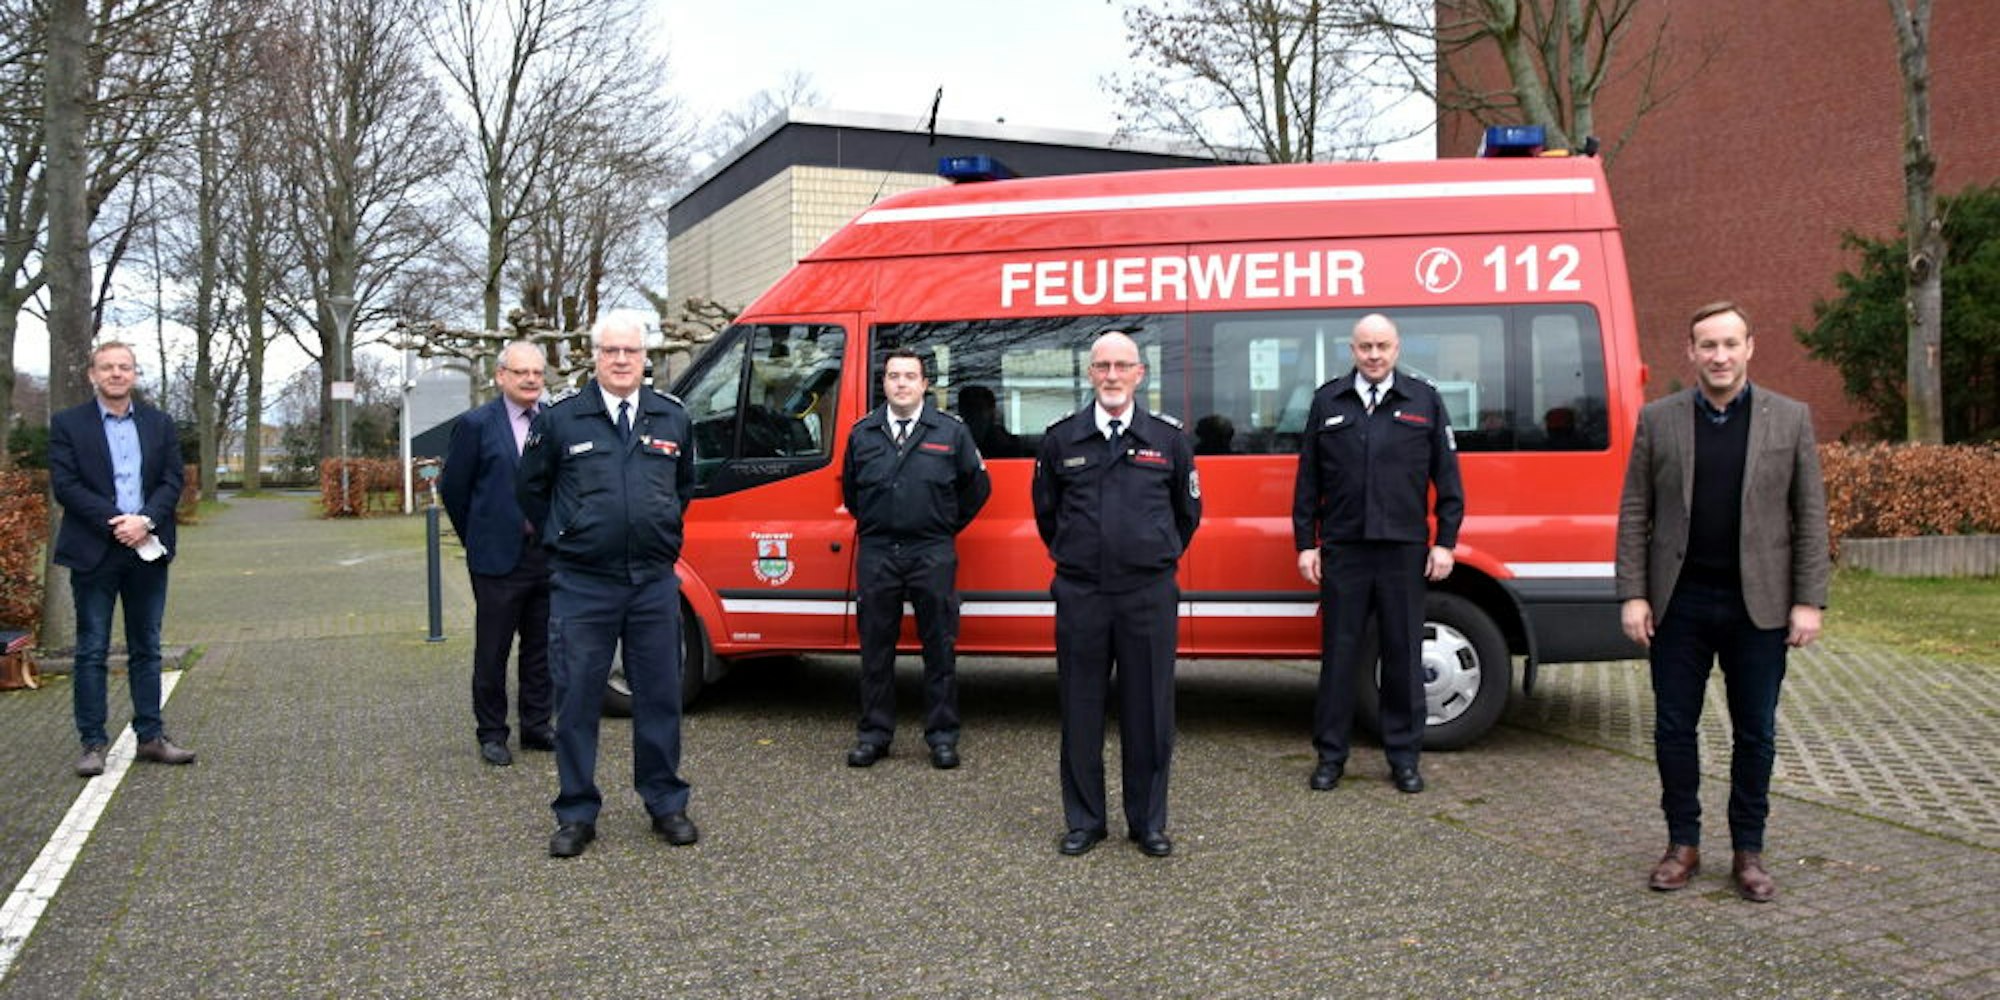 Die künftigen Leiter der Feuerwehr wurden vereidigt: Markus Grandrath, Hubert Portz, Rudolf Niephaus, Christoph Kratz, Wolfgang Lorenz, Hans-Peter Brand und Andreas Heller (v.l.).